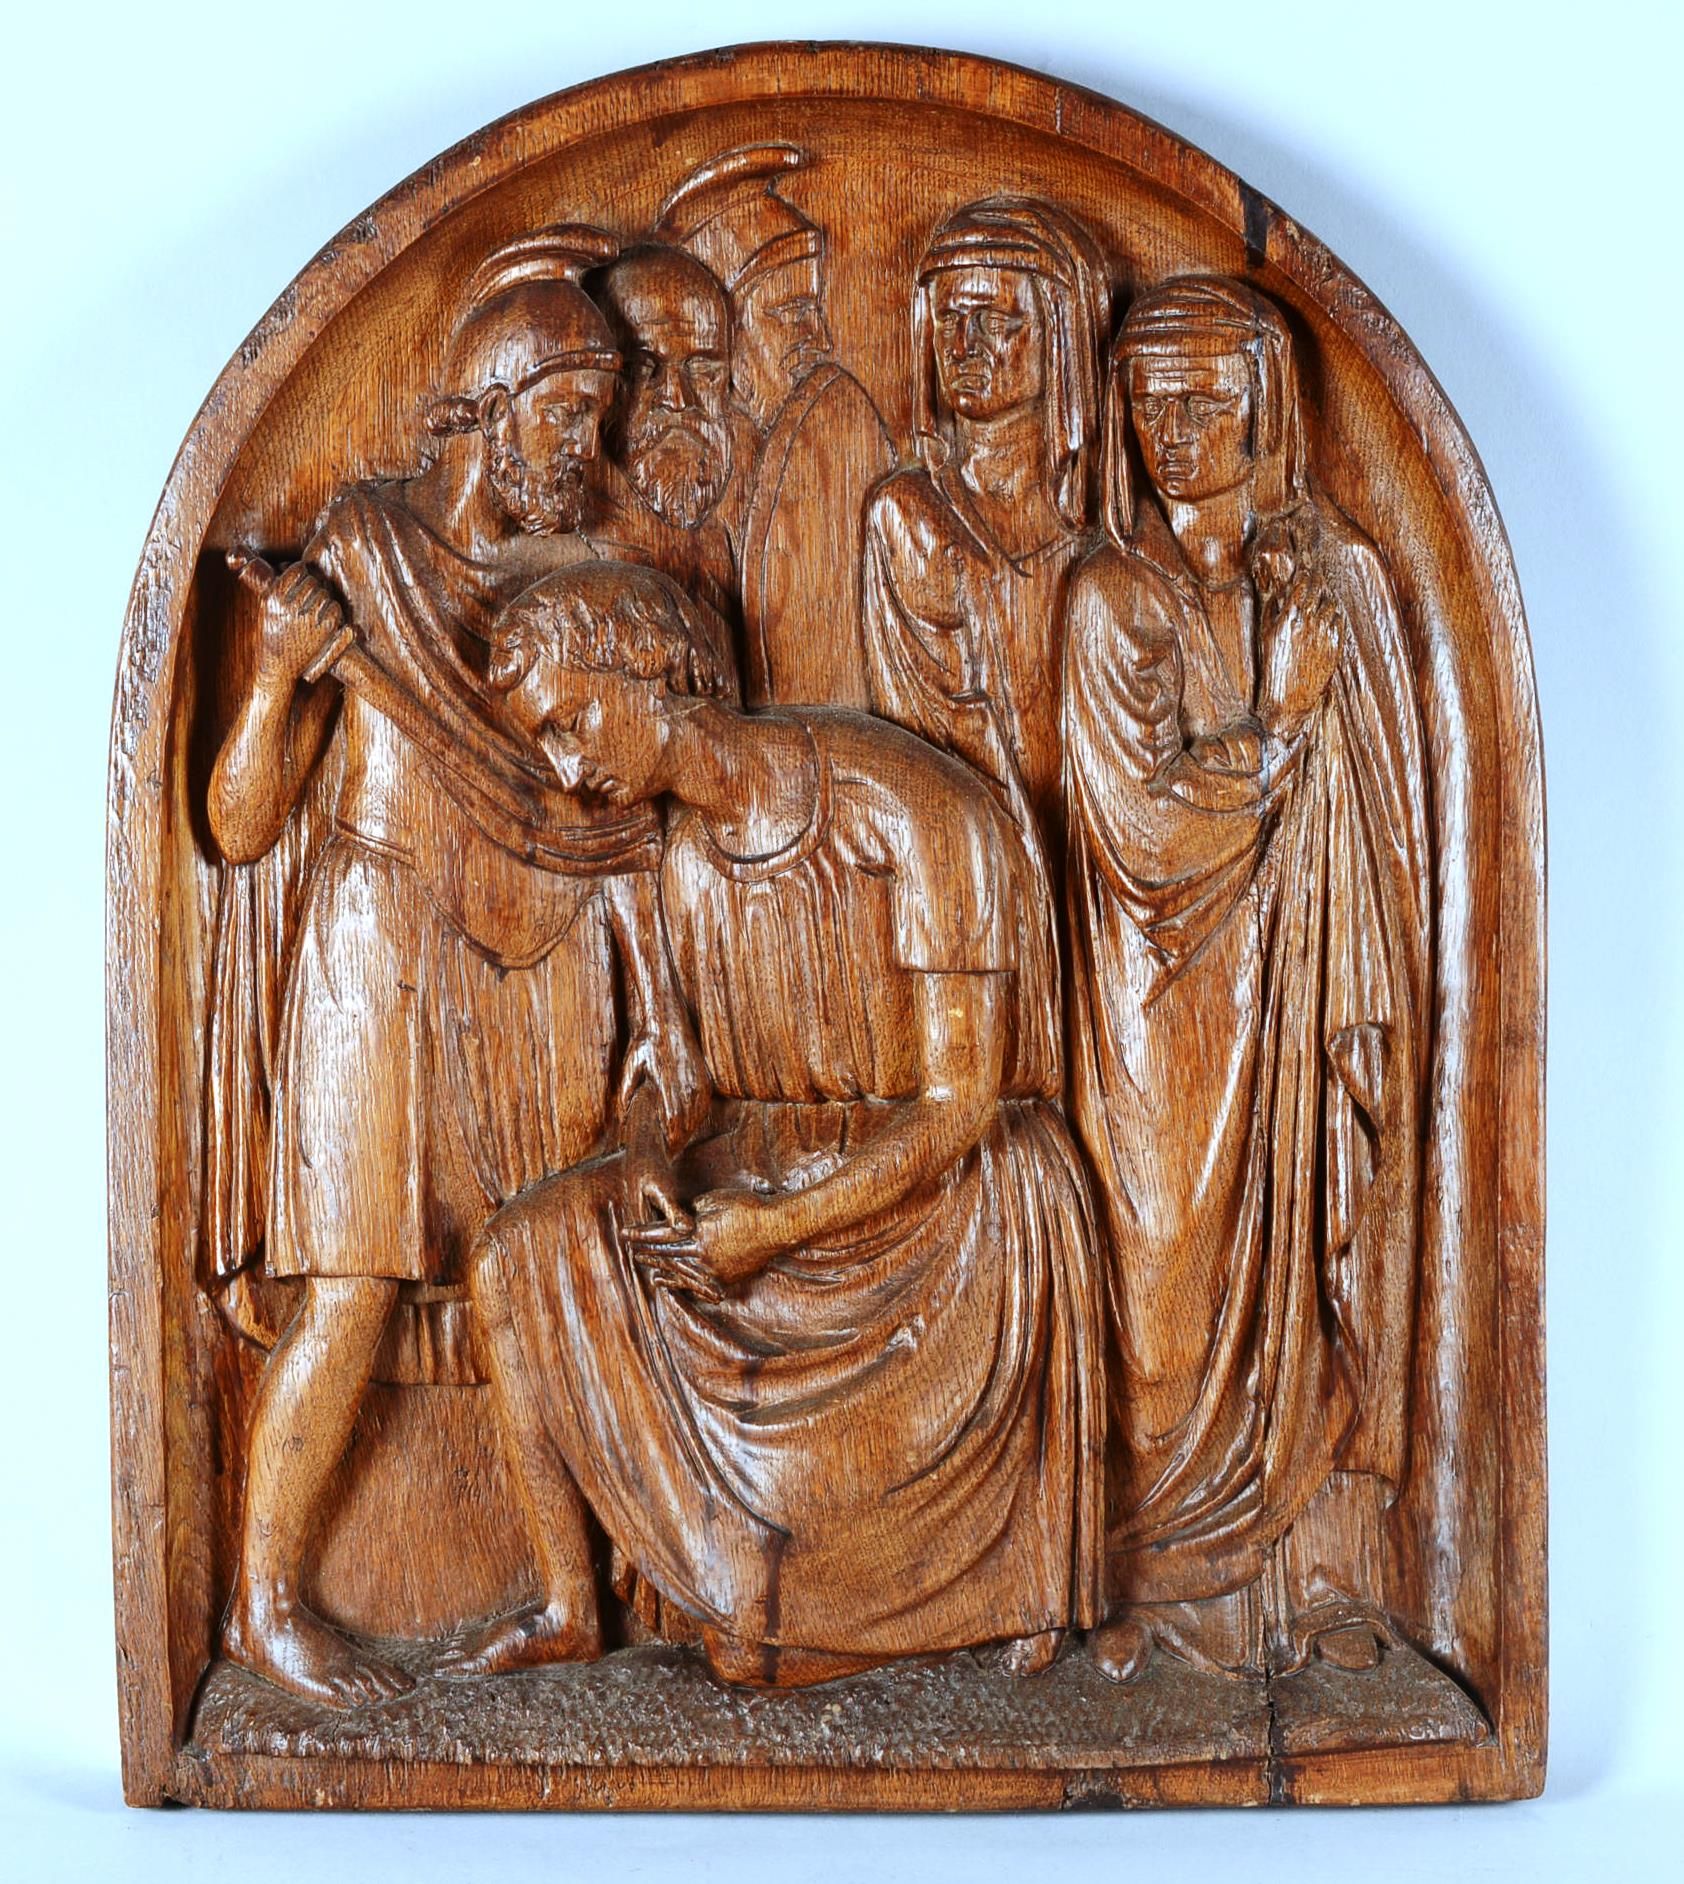 Scène de Martyre Modern school

Martyrdom scene

Wooden panel carved in relief.
&hellip;